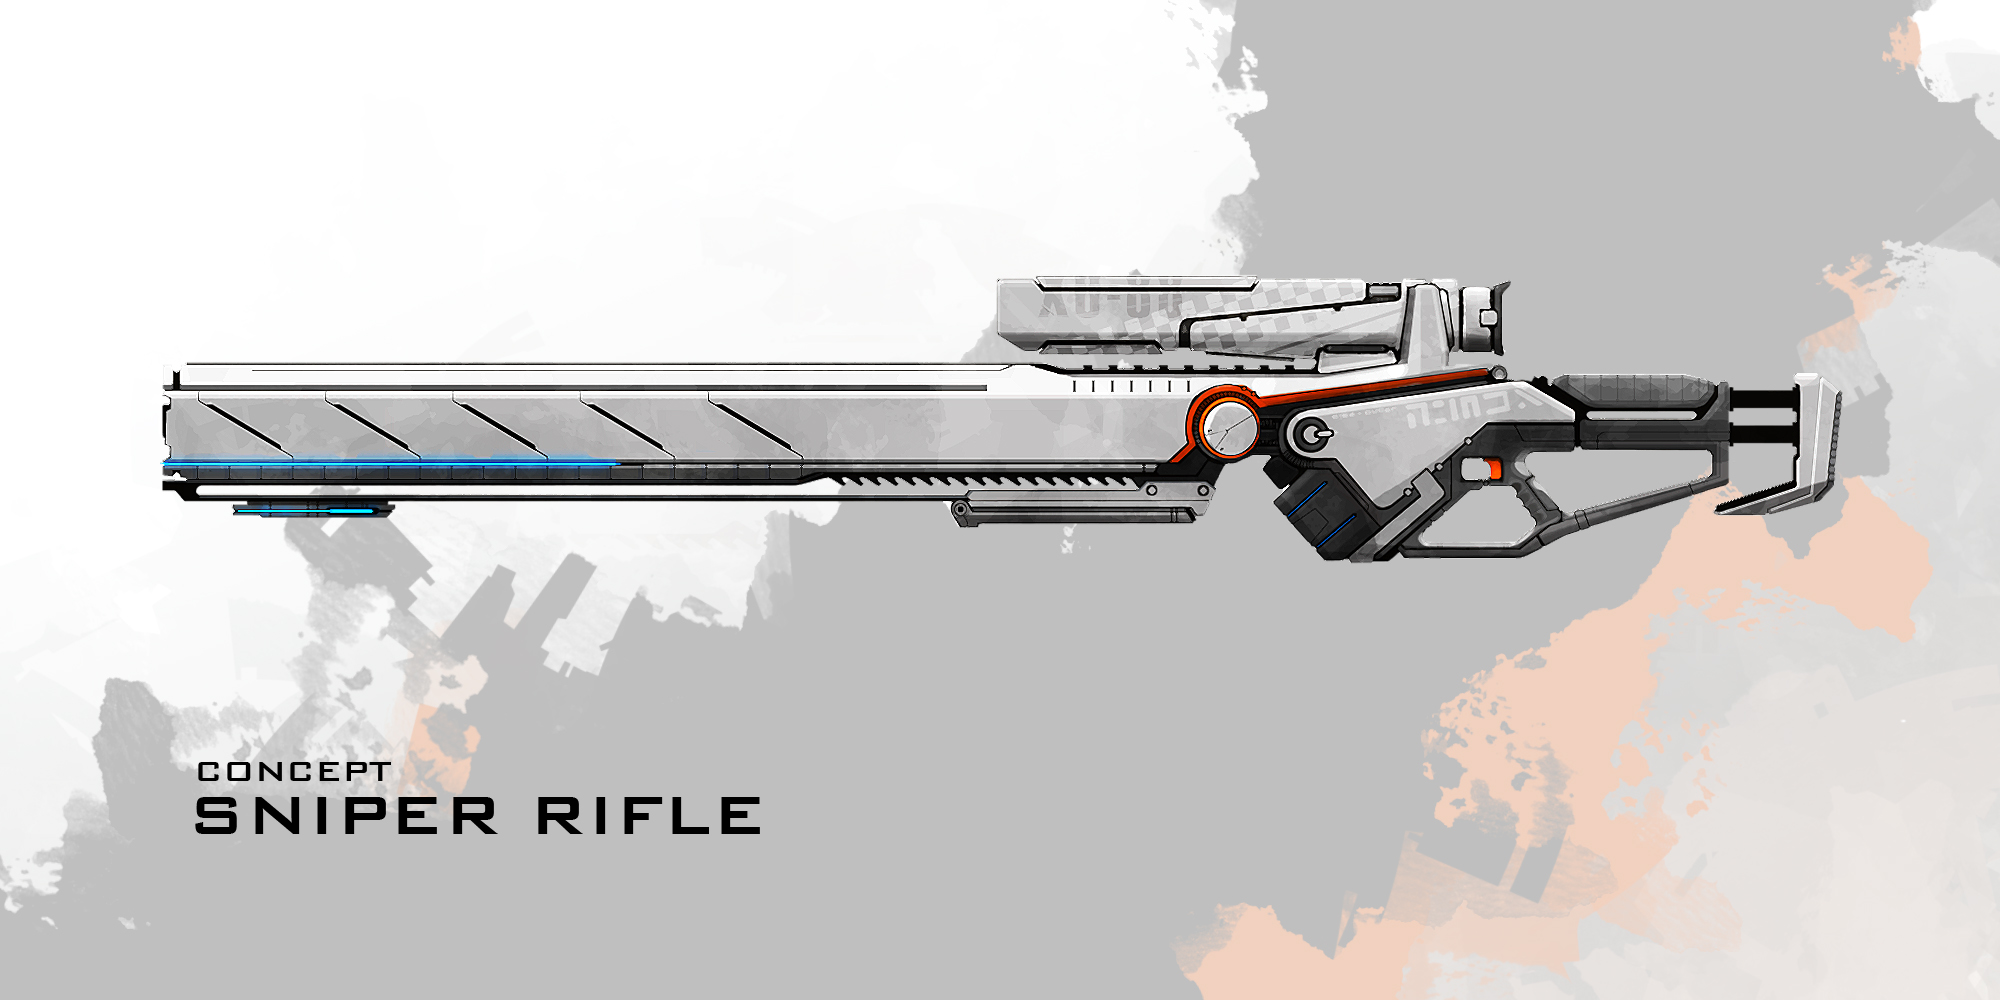 Sanctum 2 - Weapons - Sniper Rifle image - Mod DB - 2000 x 1000 jpeg 391kB